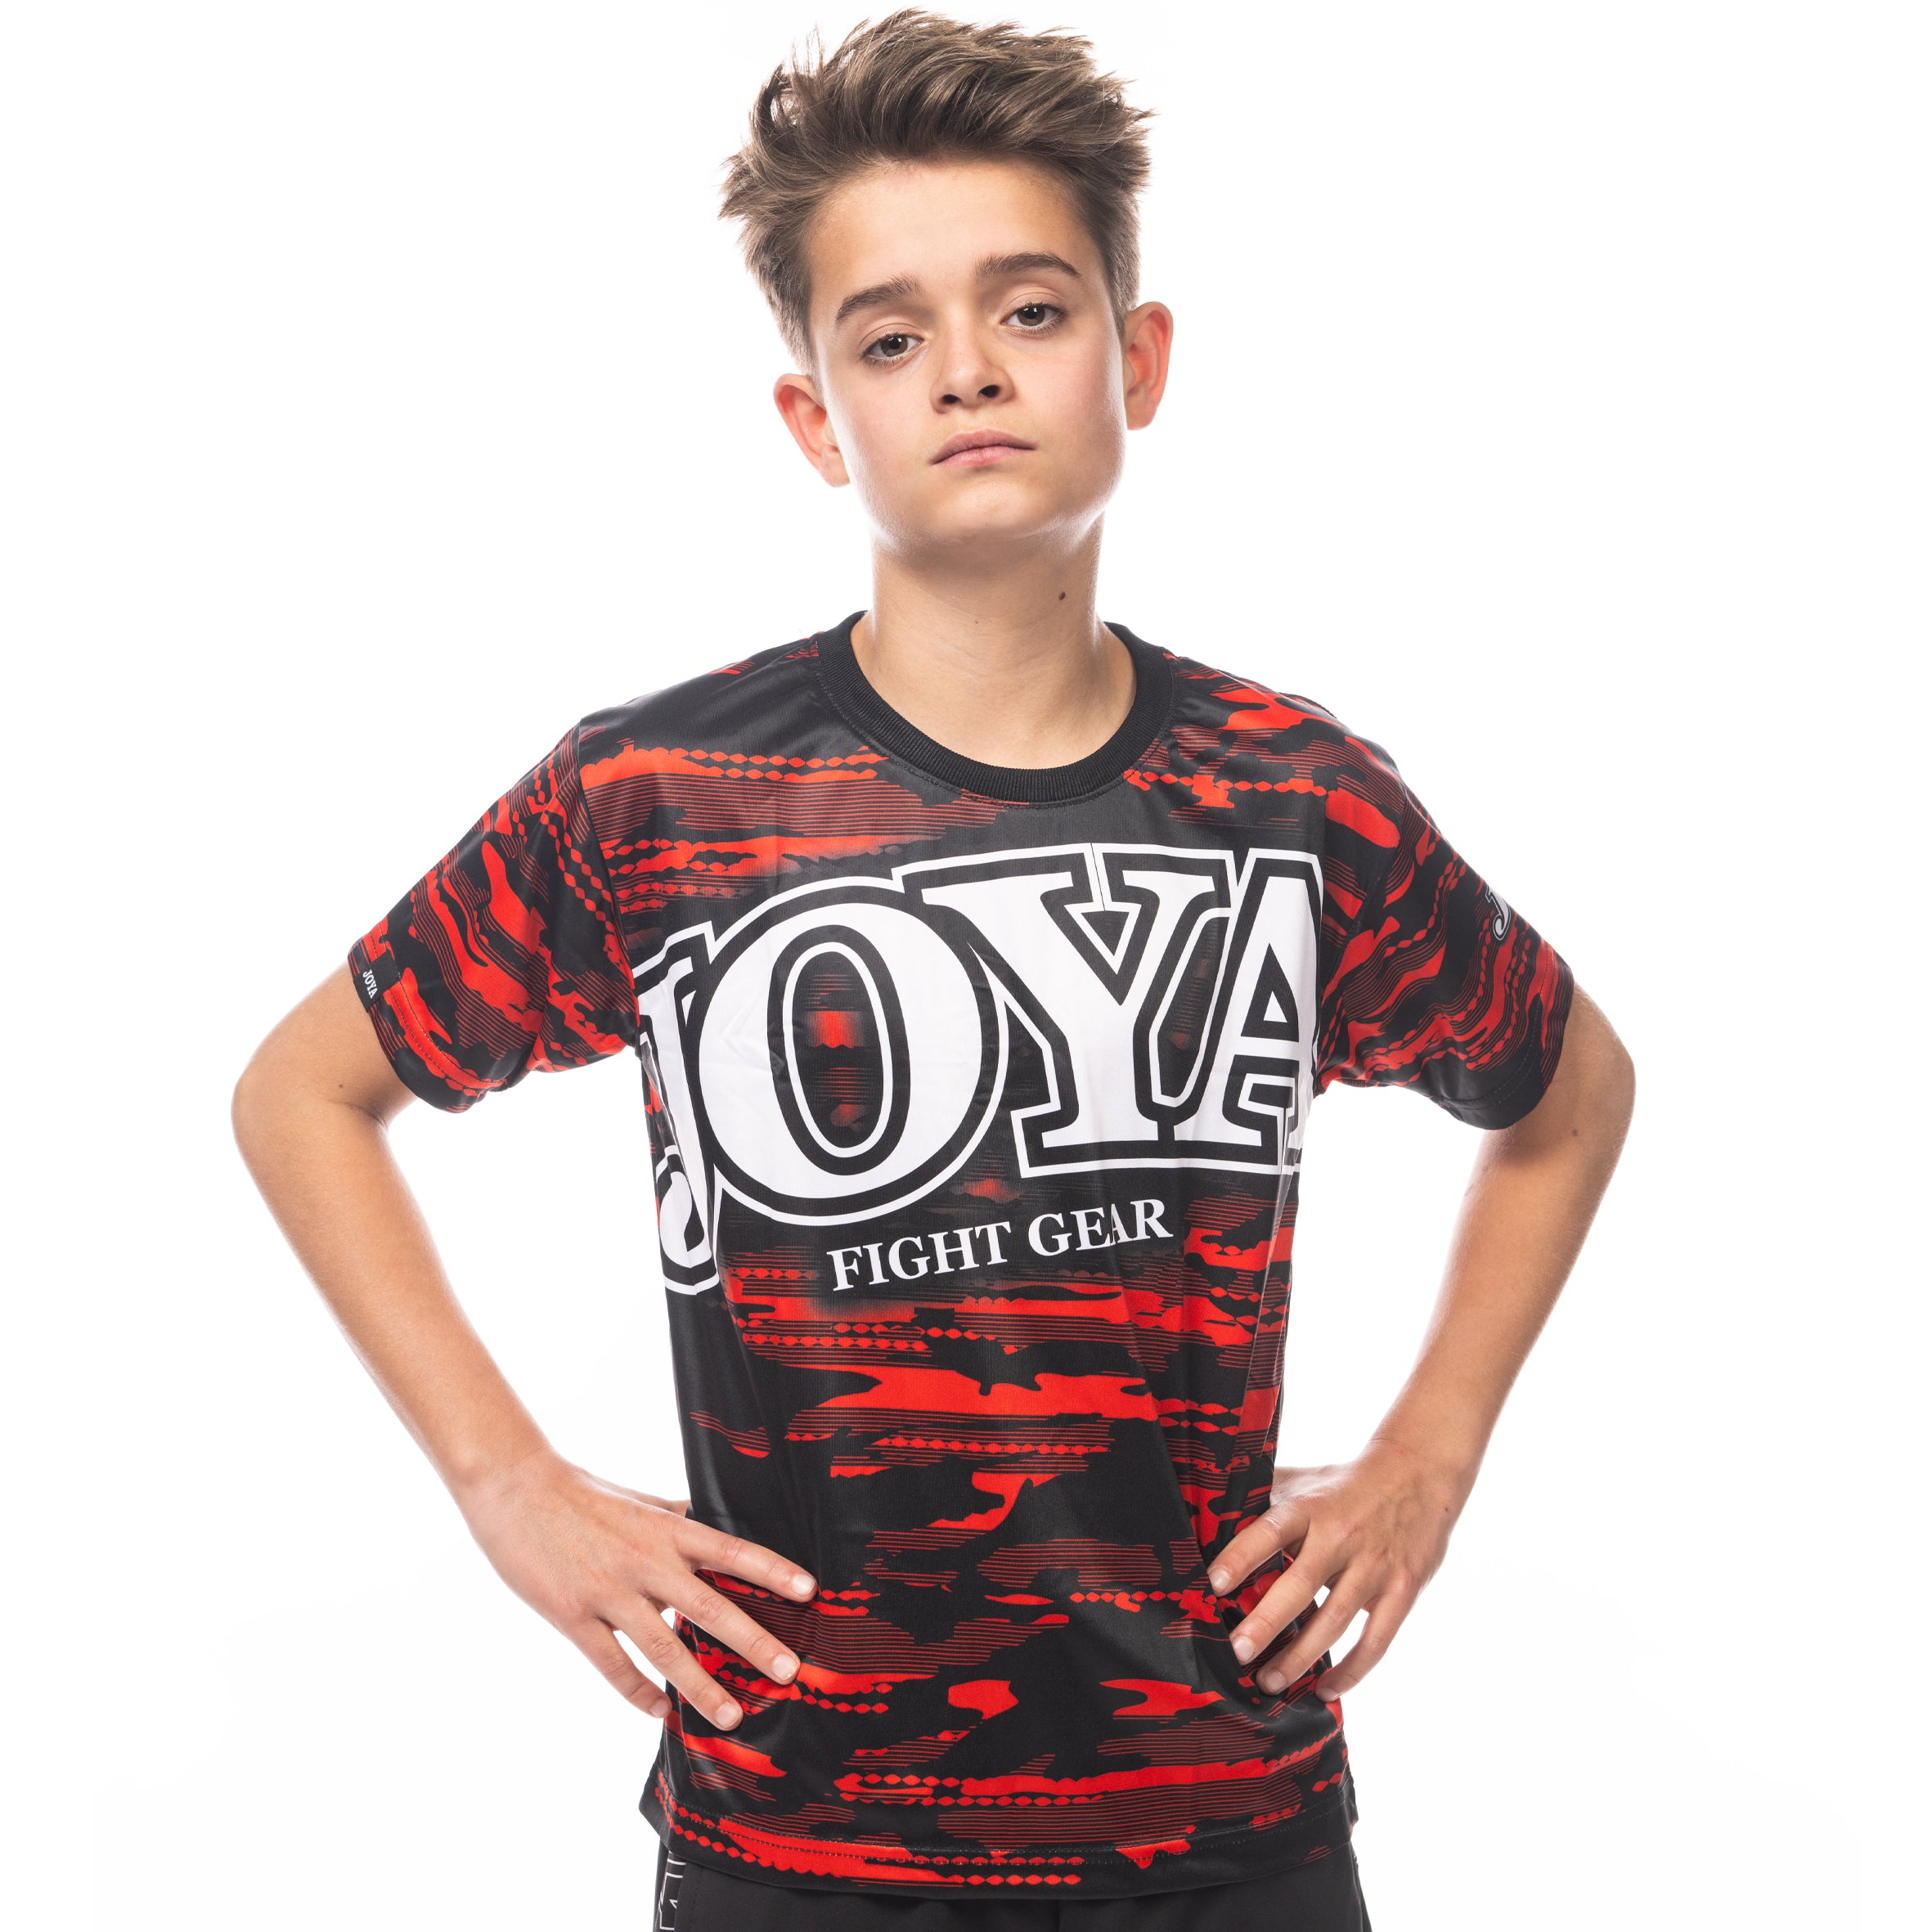 Joya Camo V2 T-shirt - Red